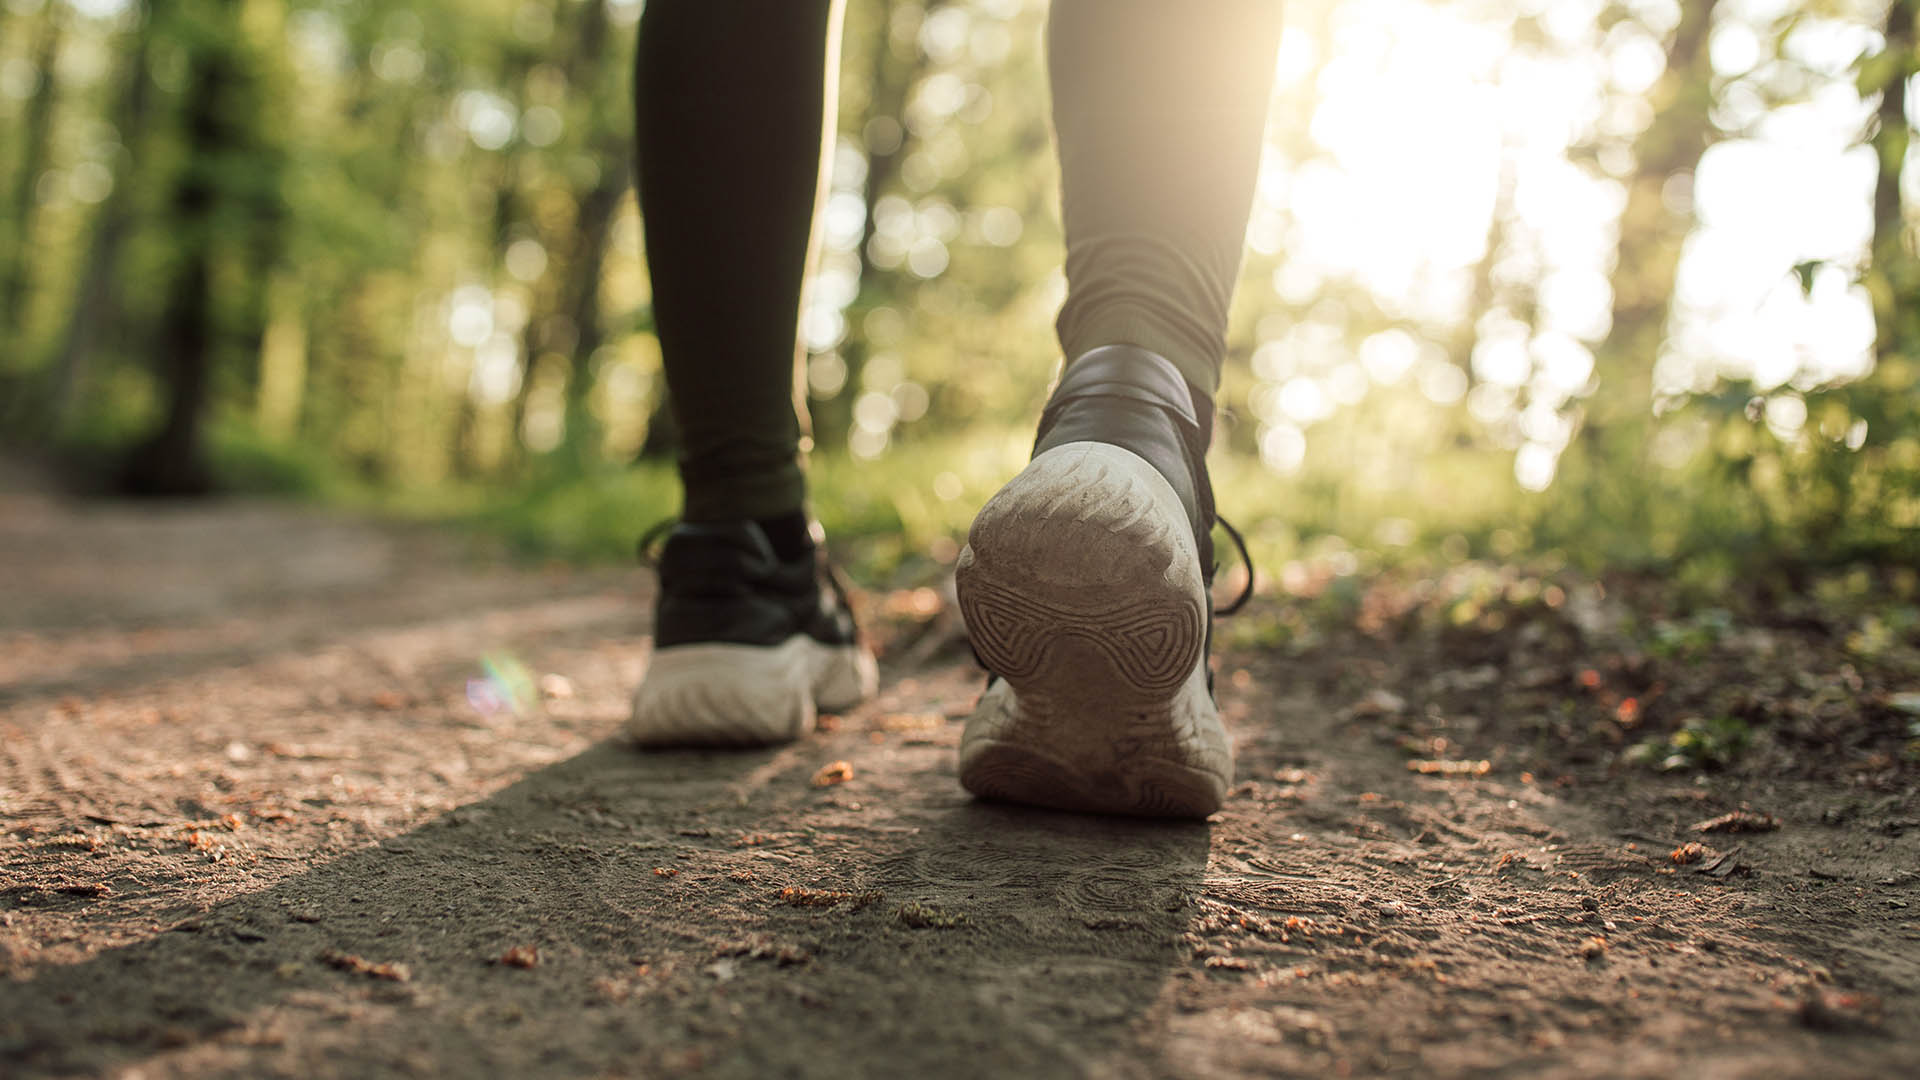 Naozaj sa dá schudnúť chôdzou? Mýty a fakty, ktoré potrebuješ vedieť